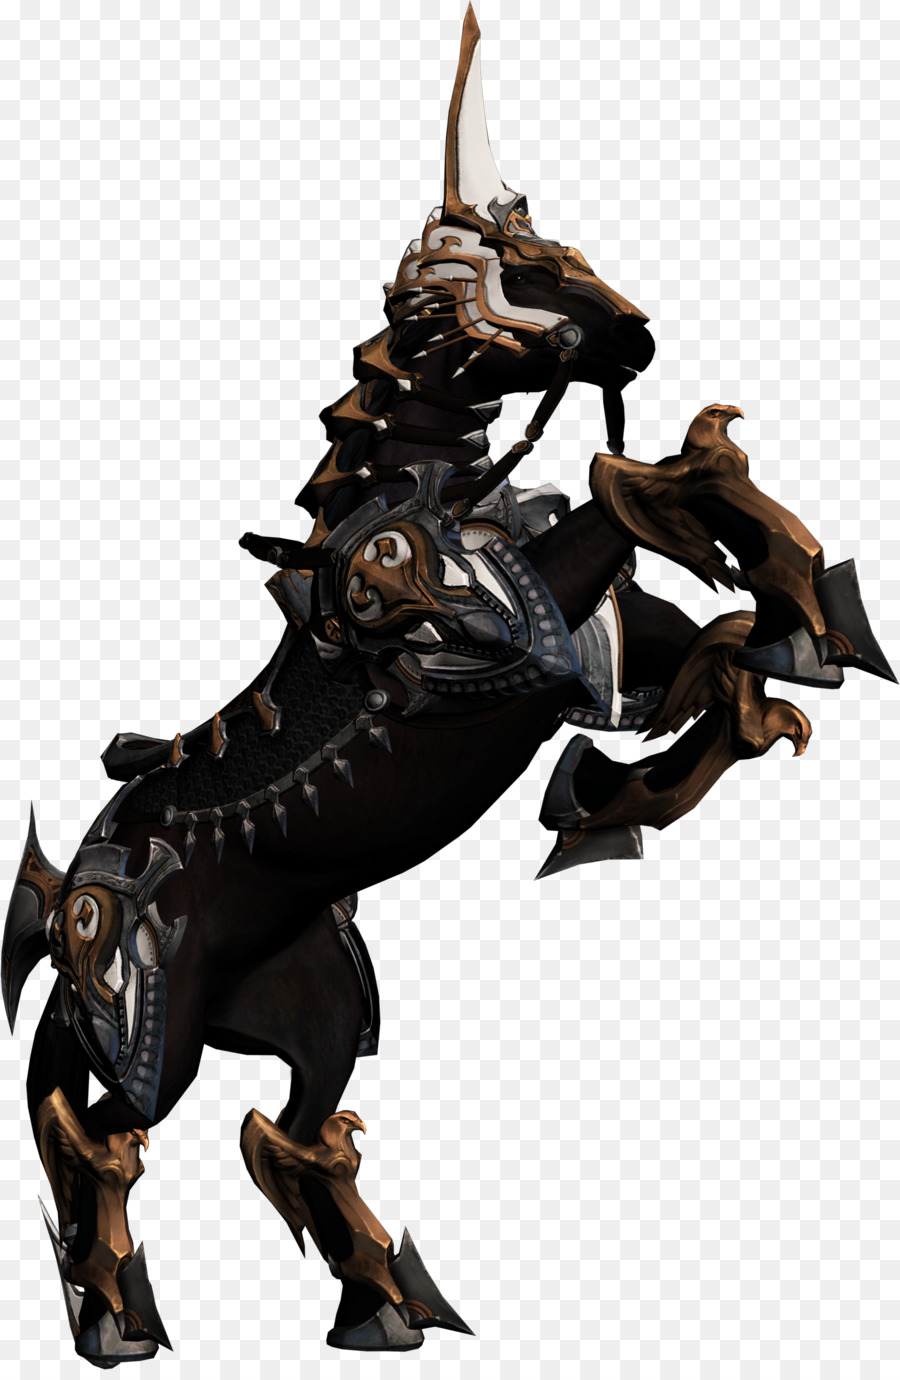 Cavallo In Bronzo Di Mammiferi - cavallo